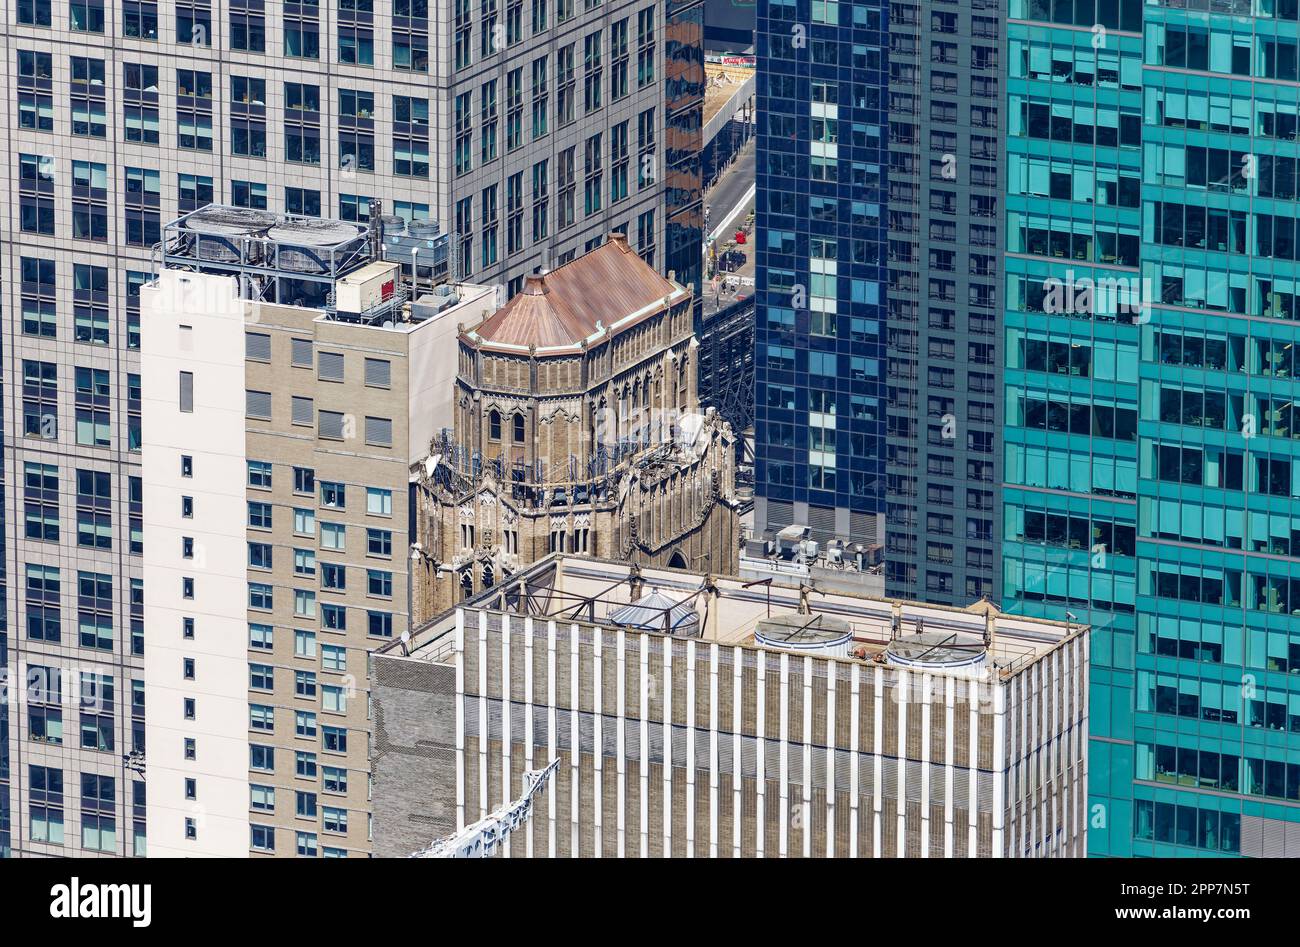 Bush Tower, en el 130 West 42nd Street, es un estrecho rascacielos de oficinas neogótico de ladrillo y terracota, cubierto por un techo de cobre. Foto de stock